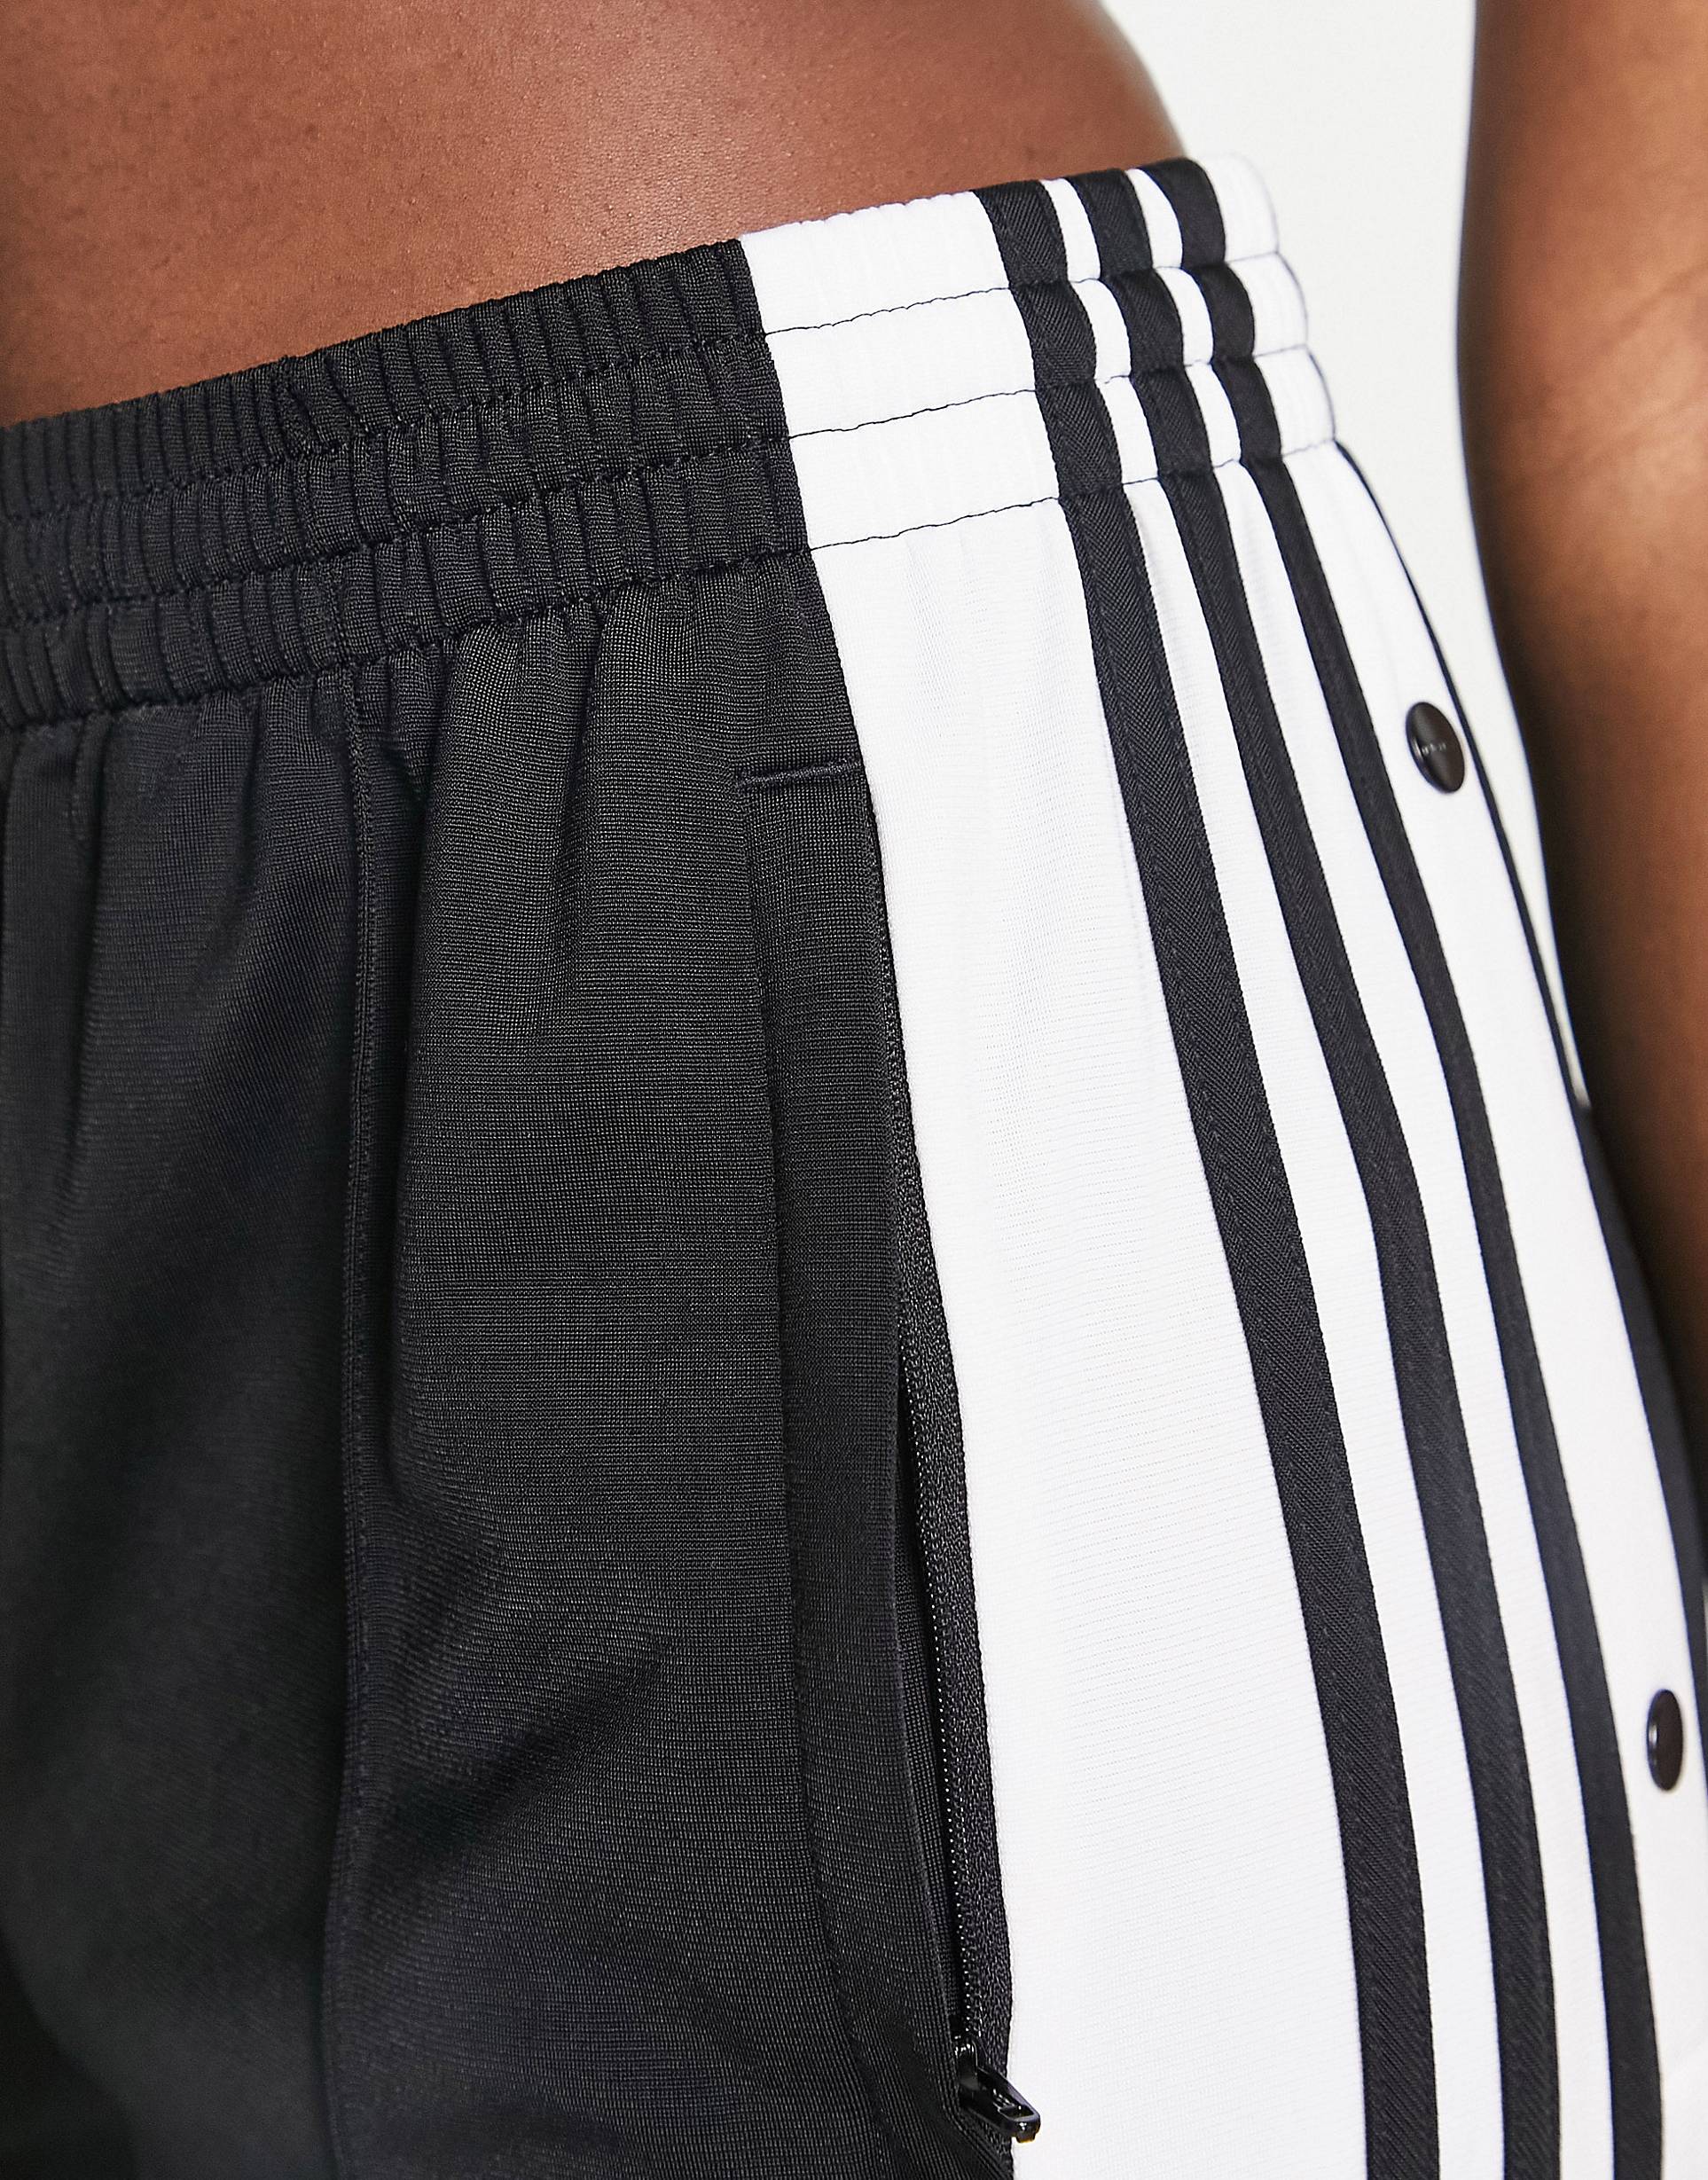 Черные спортивные брюки с кнопками по бокам adidas Originals adibreak –заказать по доступной цене из-за рубежа в «CDEK.Shopping»